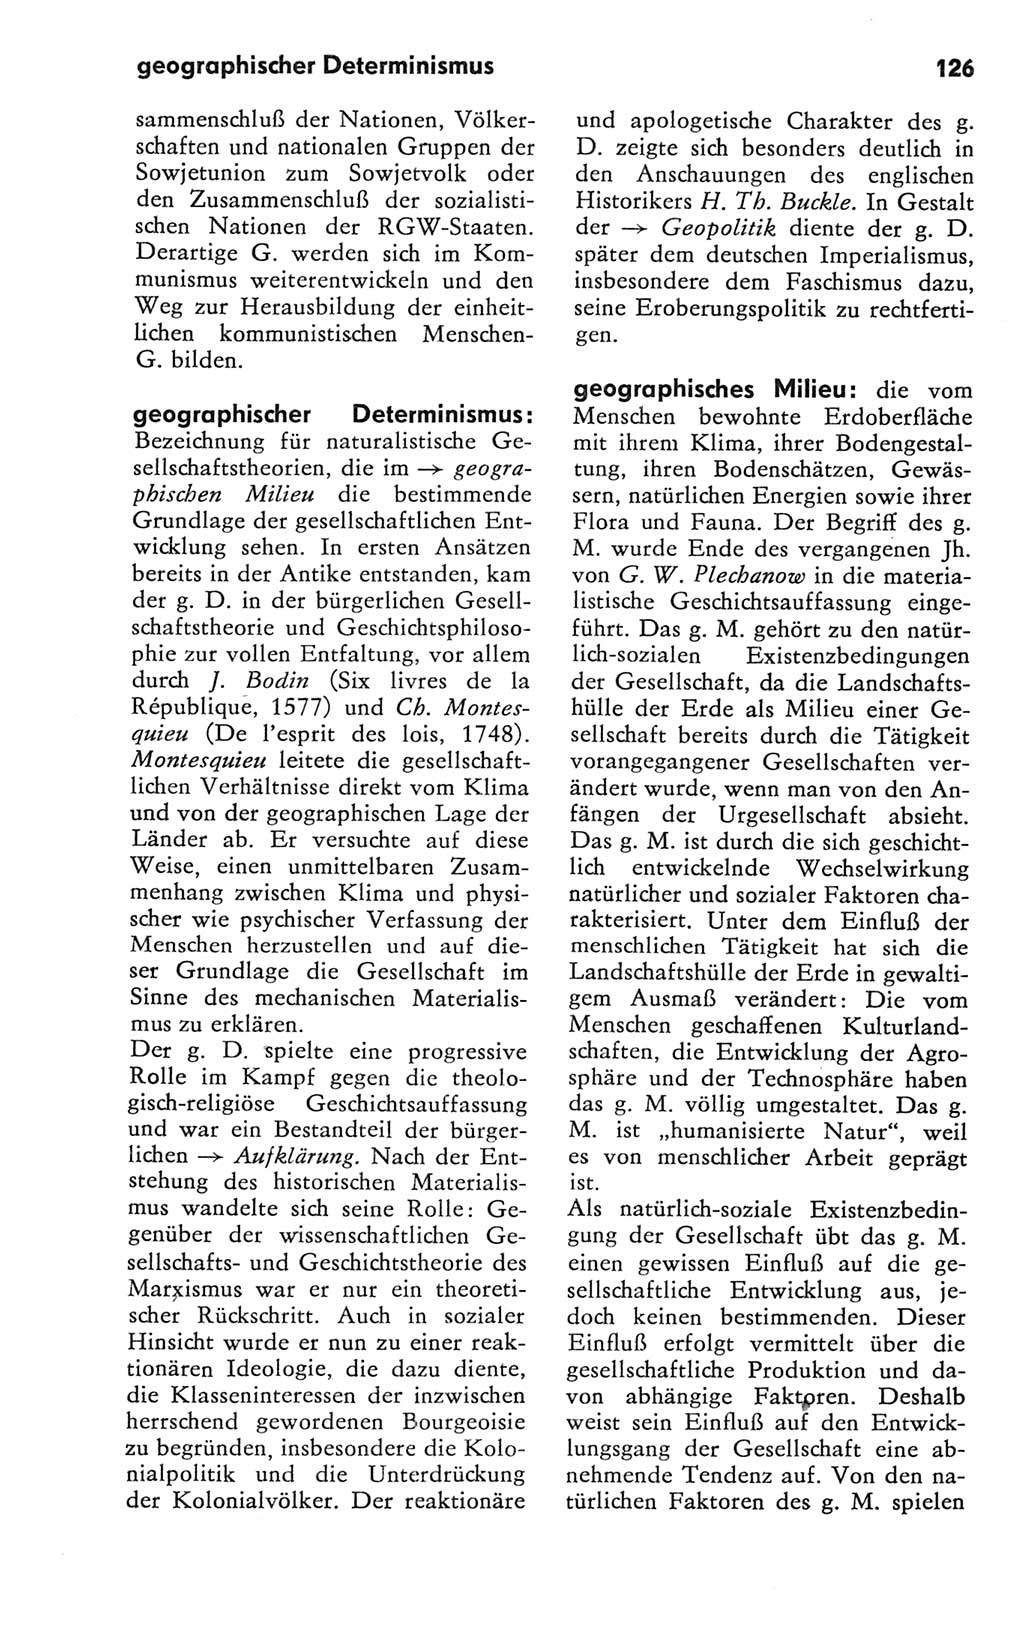 Kleines Wörterbuch der marxistisch-leninistischen Philosophie [Deutsche Demokratische Republik (DDR)] 1981, Seite 126 (Kl. Wb. ML Phil. DDR 1981, S. 126)